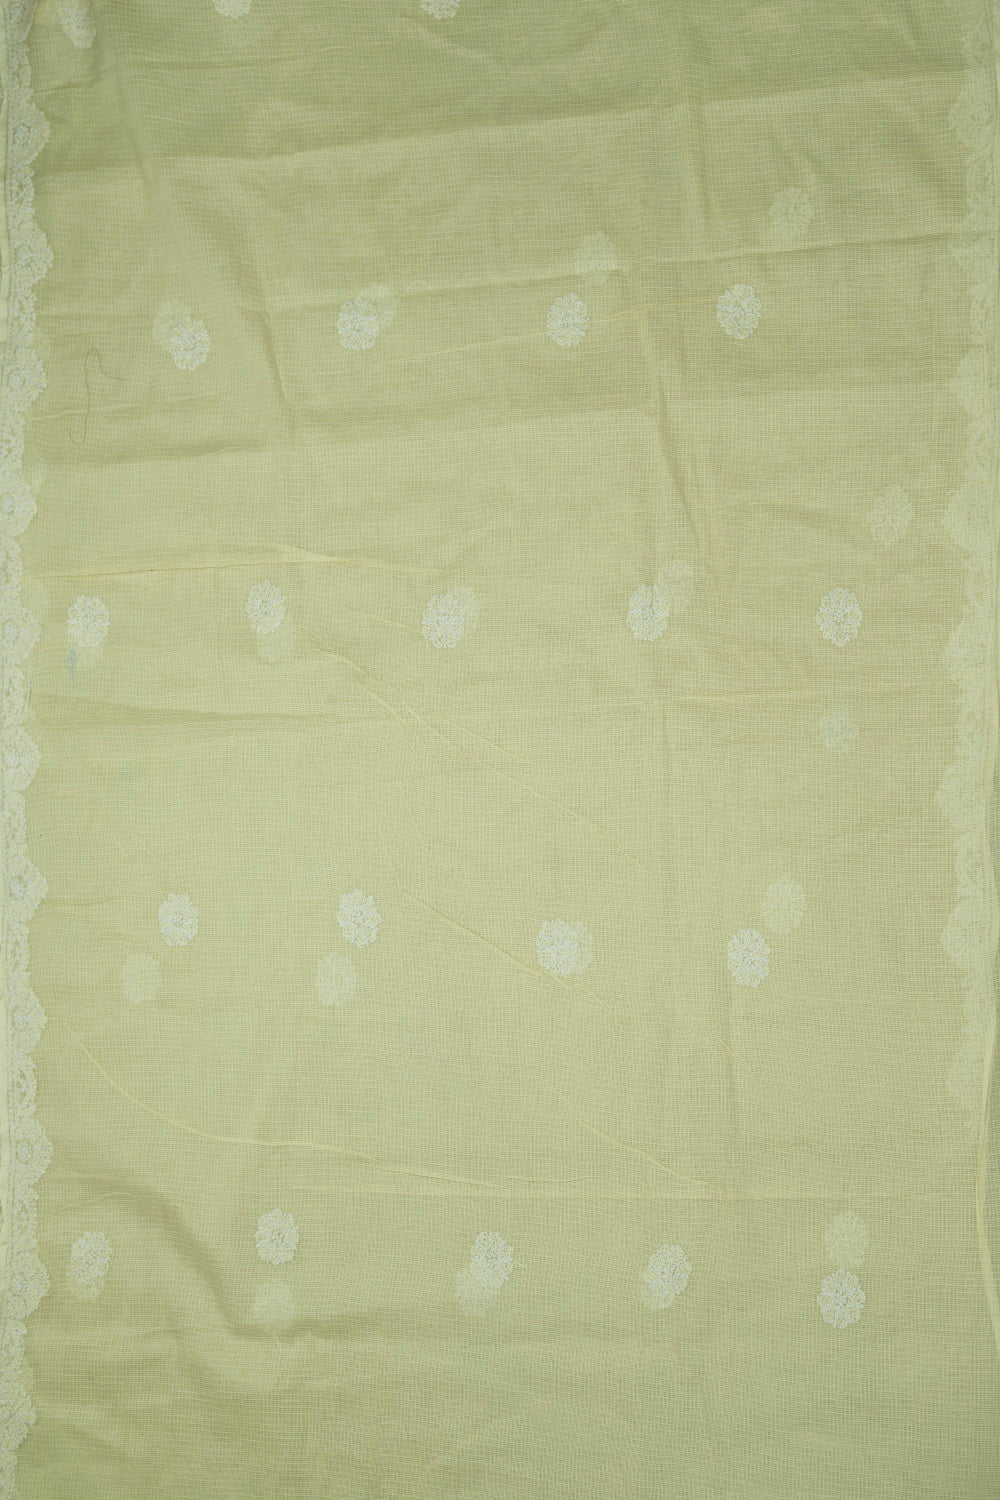 Embroidered Saree-Matkatus 